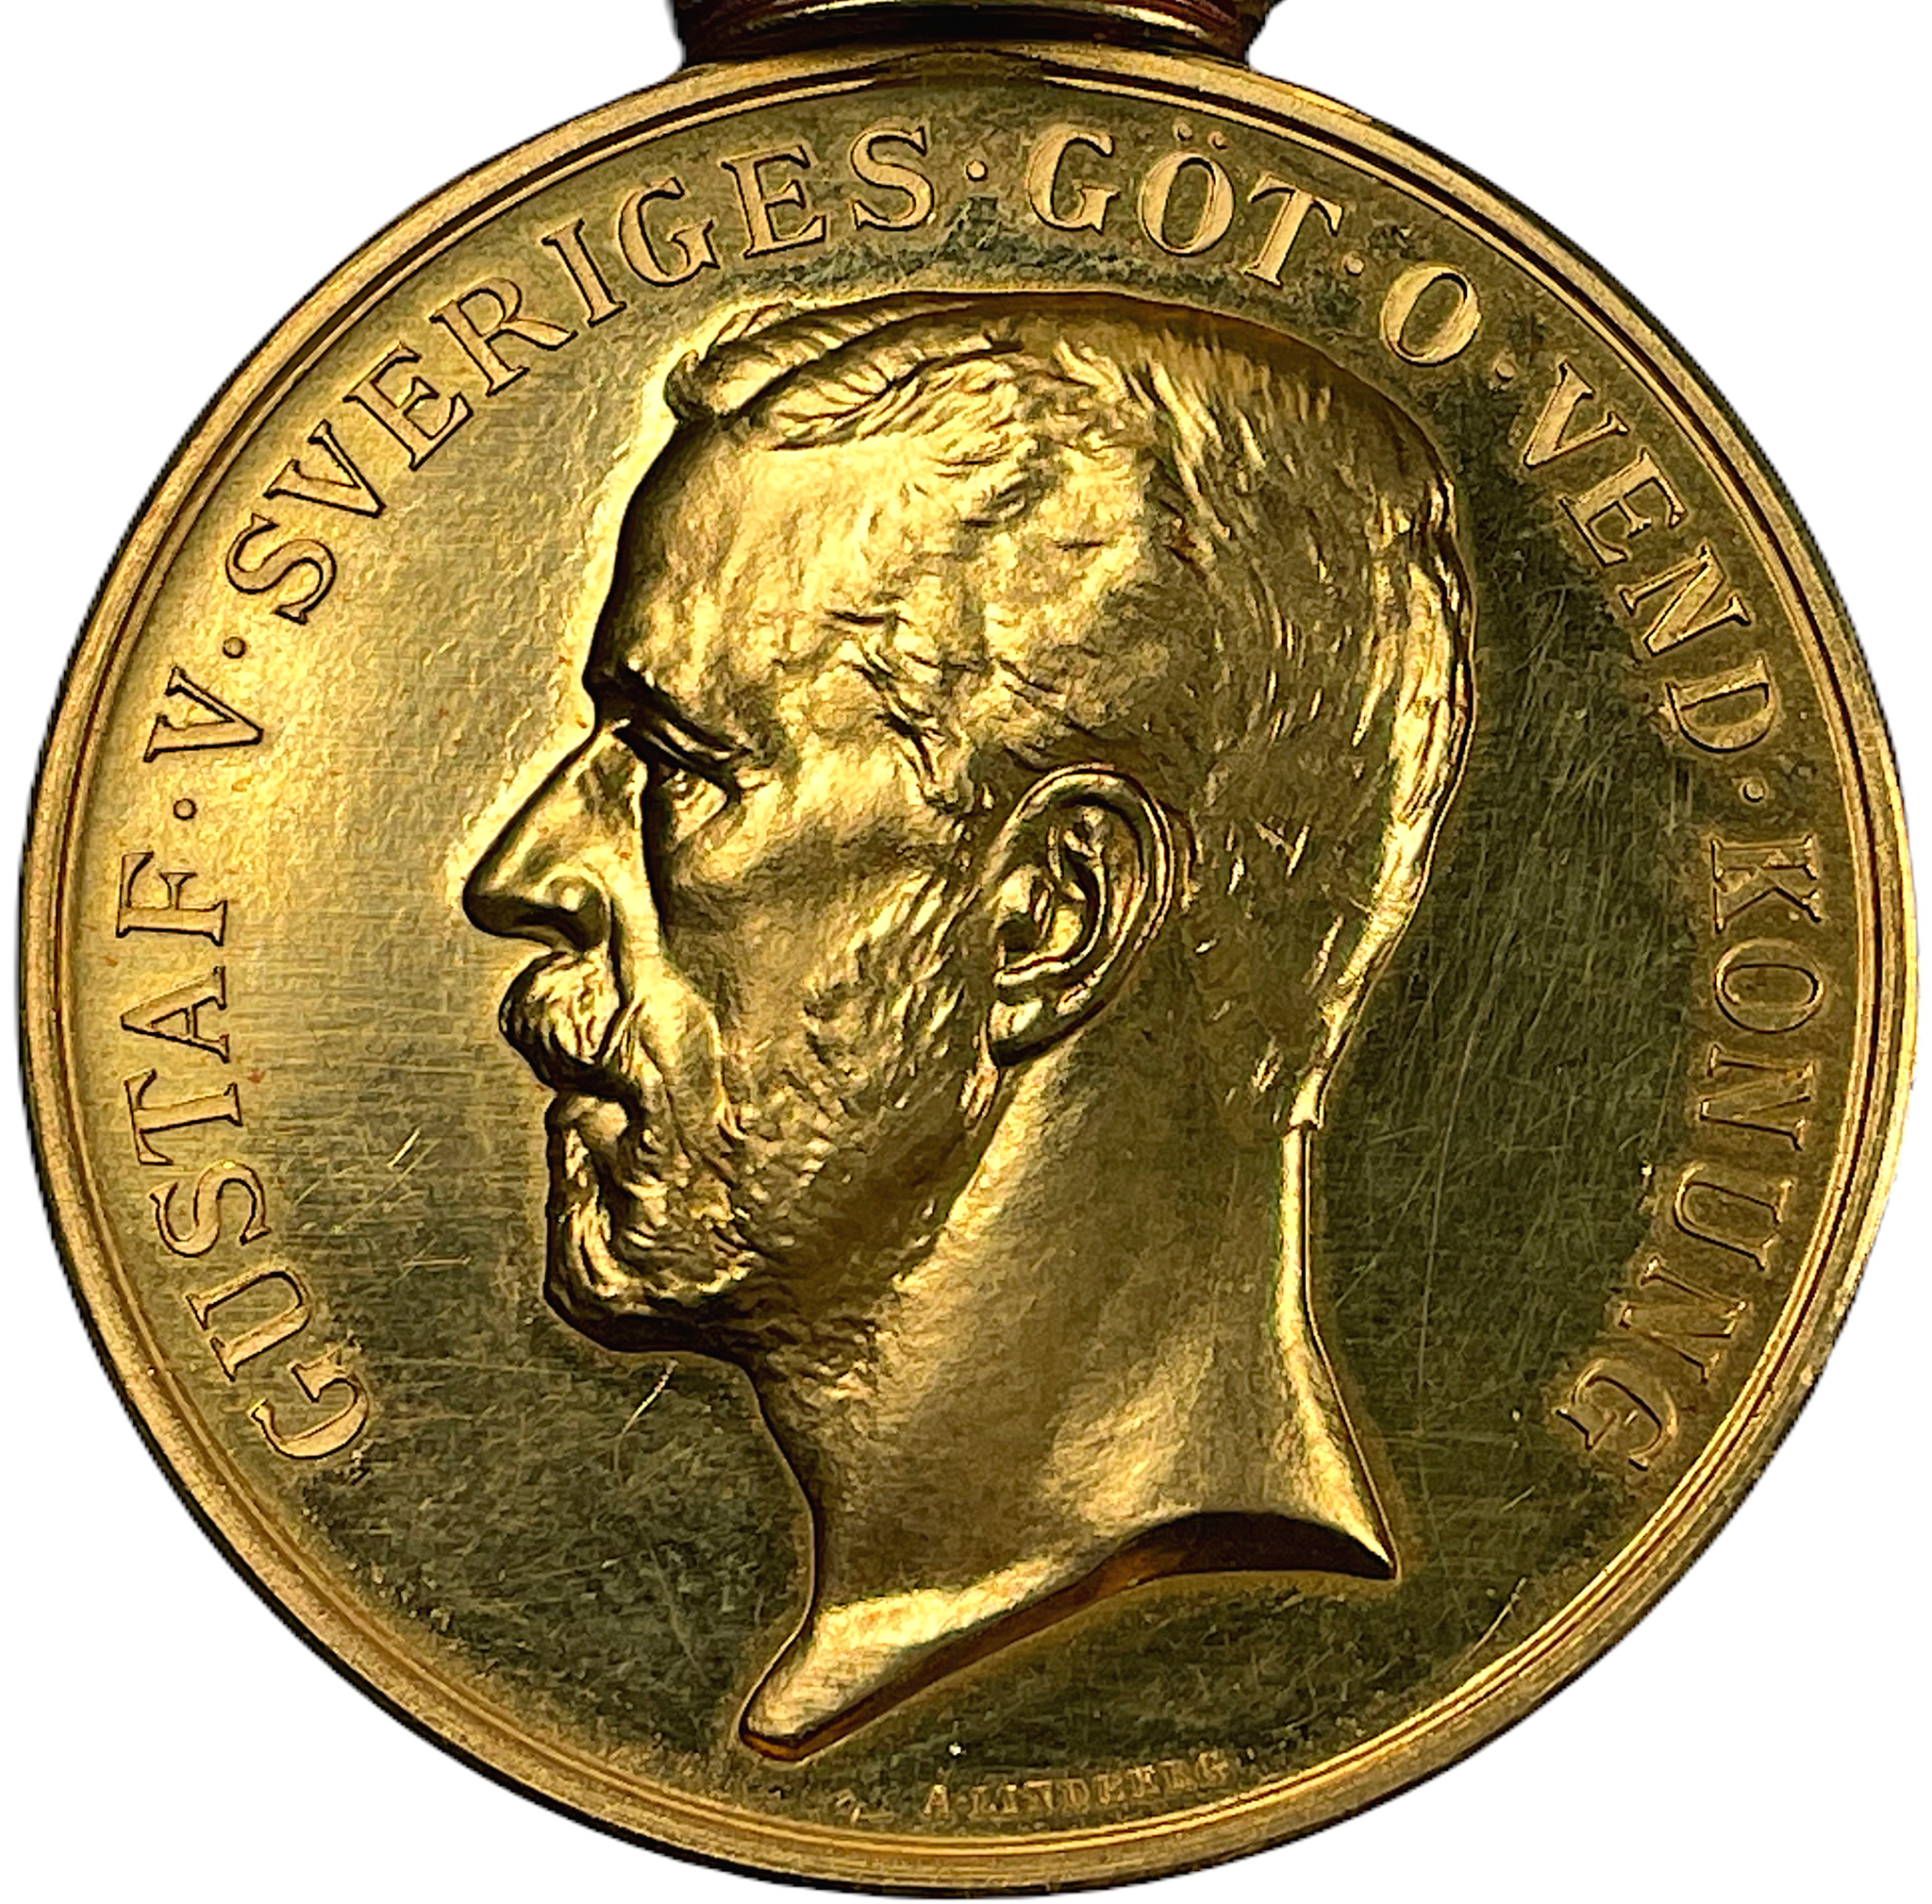 Gustav V - För trohet och flit 1925 - Vackert exemplar i guld